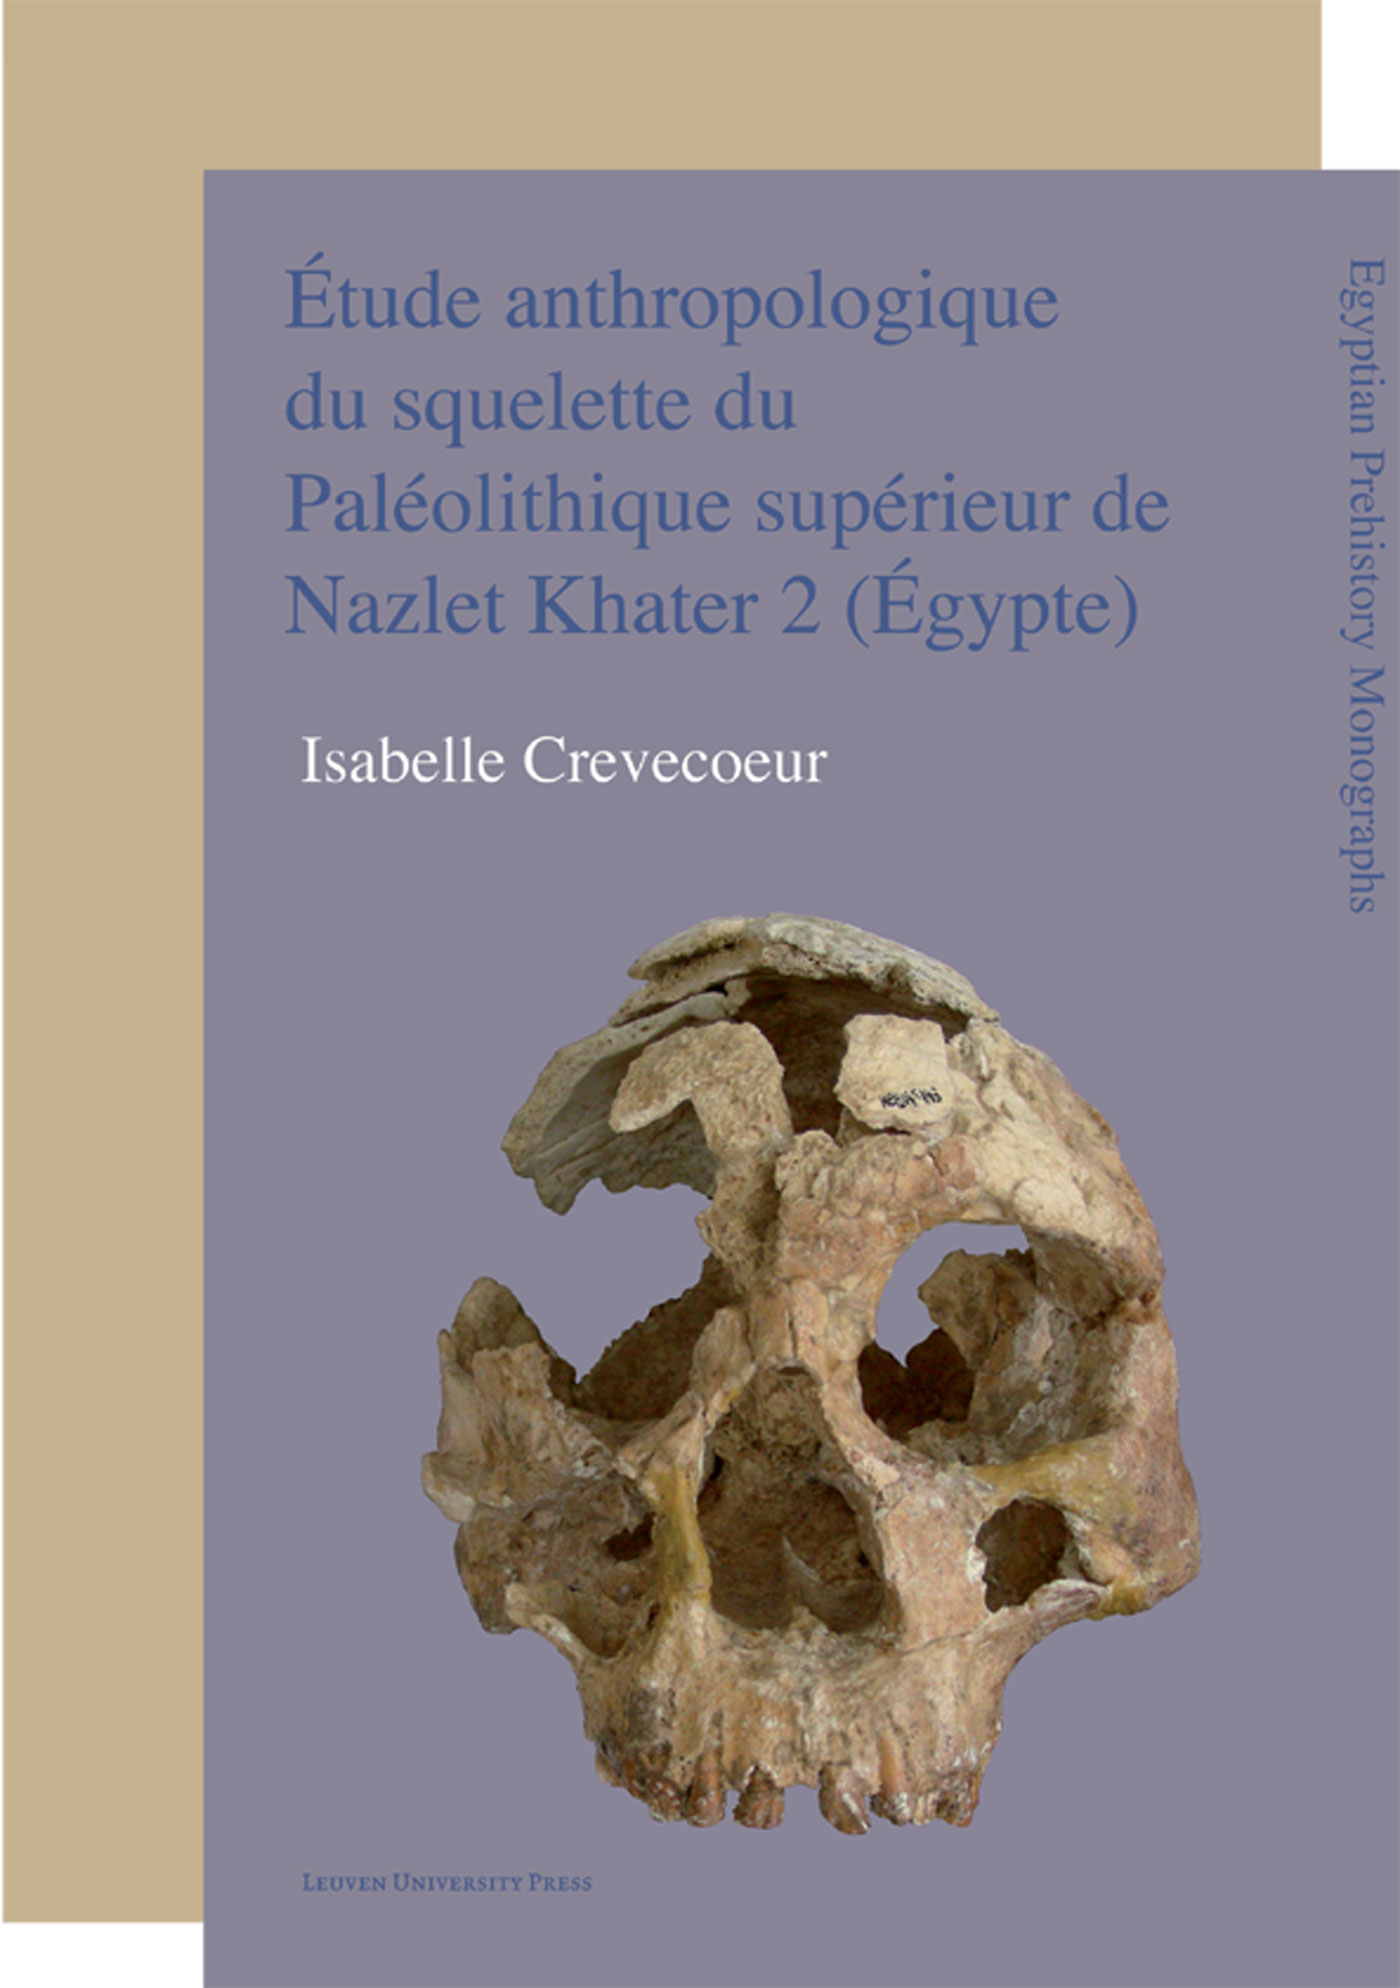 Étude anthropologique du squelette du Paléolithique supérieur de Nazlet Khater 2 (Égypte) (Ebook)